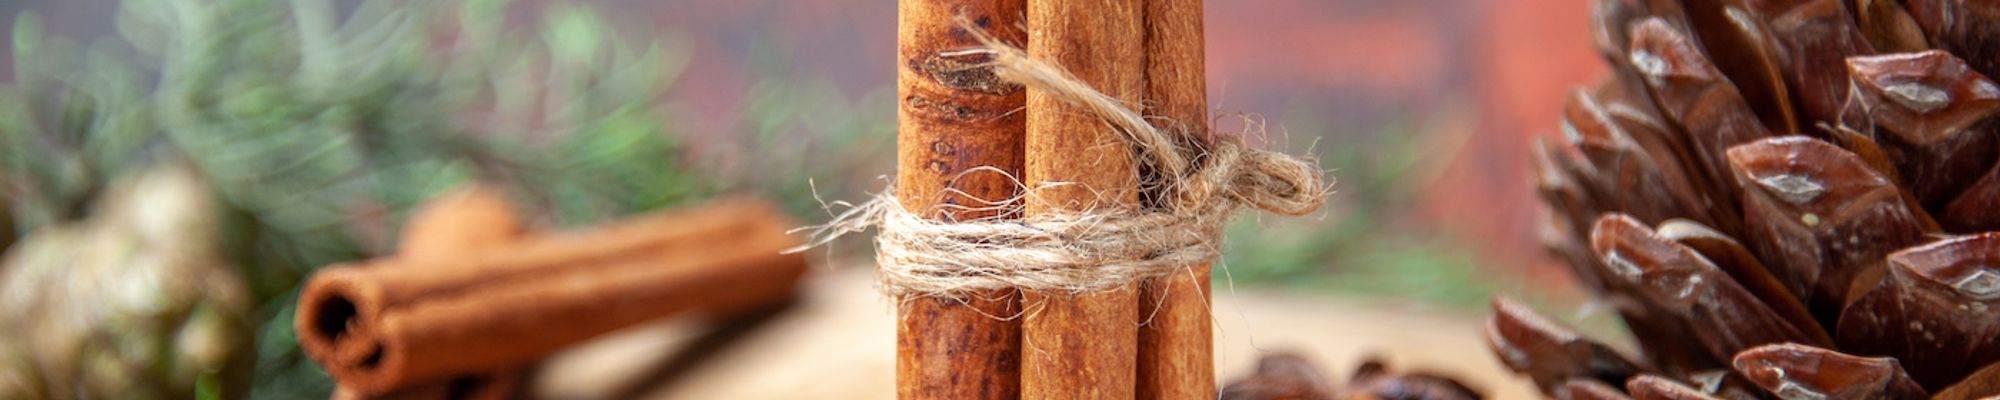 Príliš veľa škorice môže škodiť, no inak je to skvelá korenina s mnohými výhodami. Čo vieme o škorici?